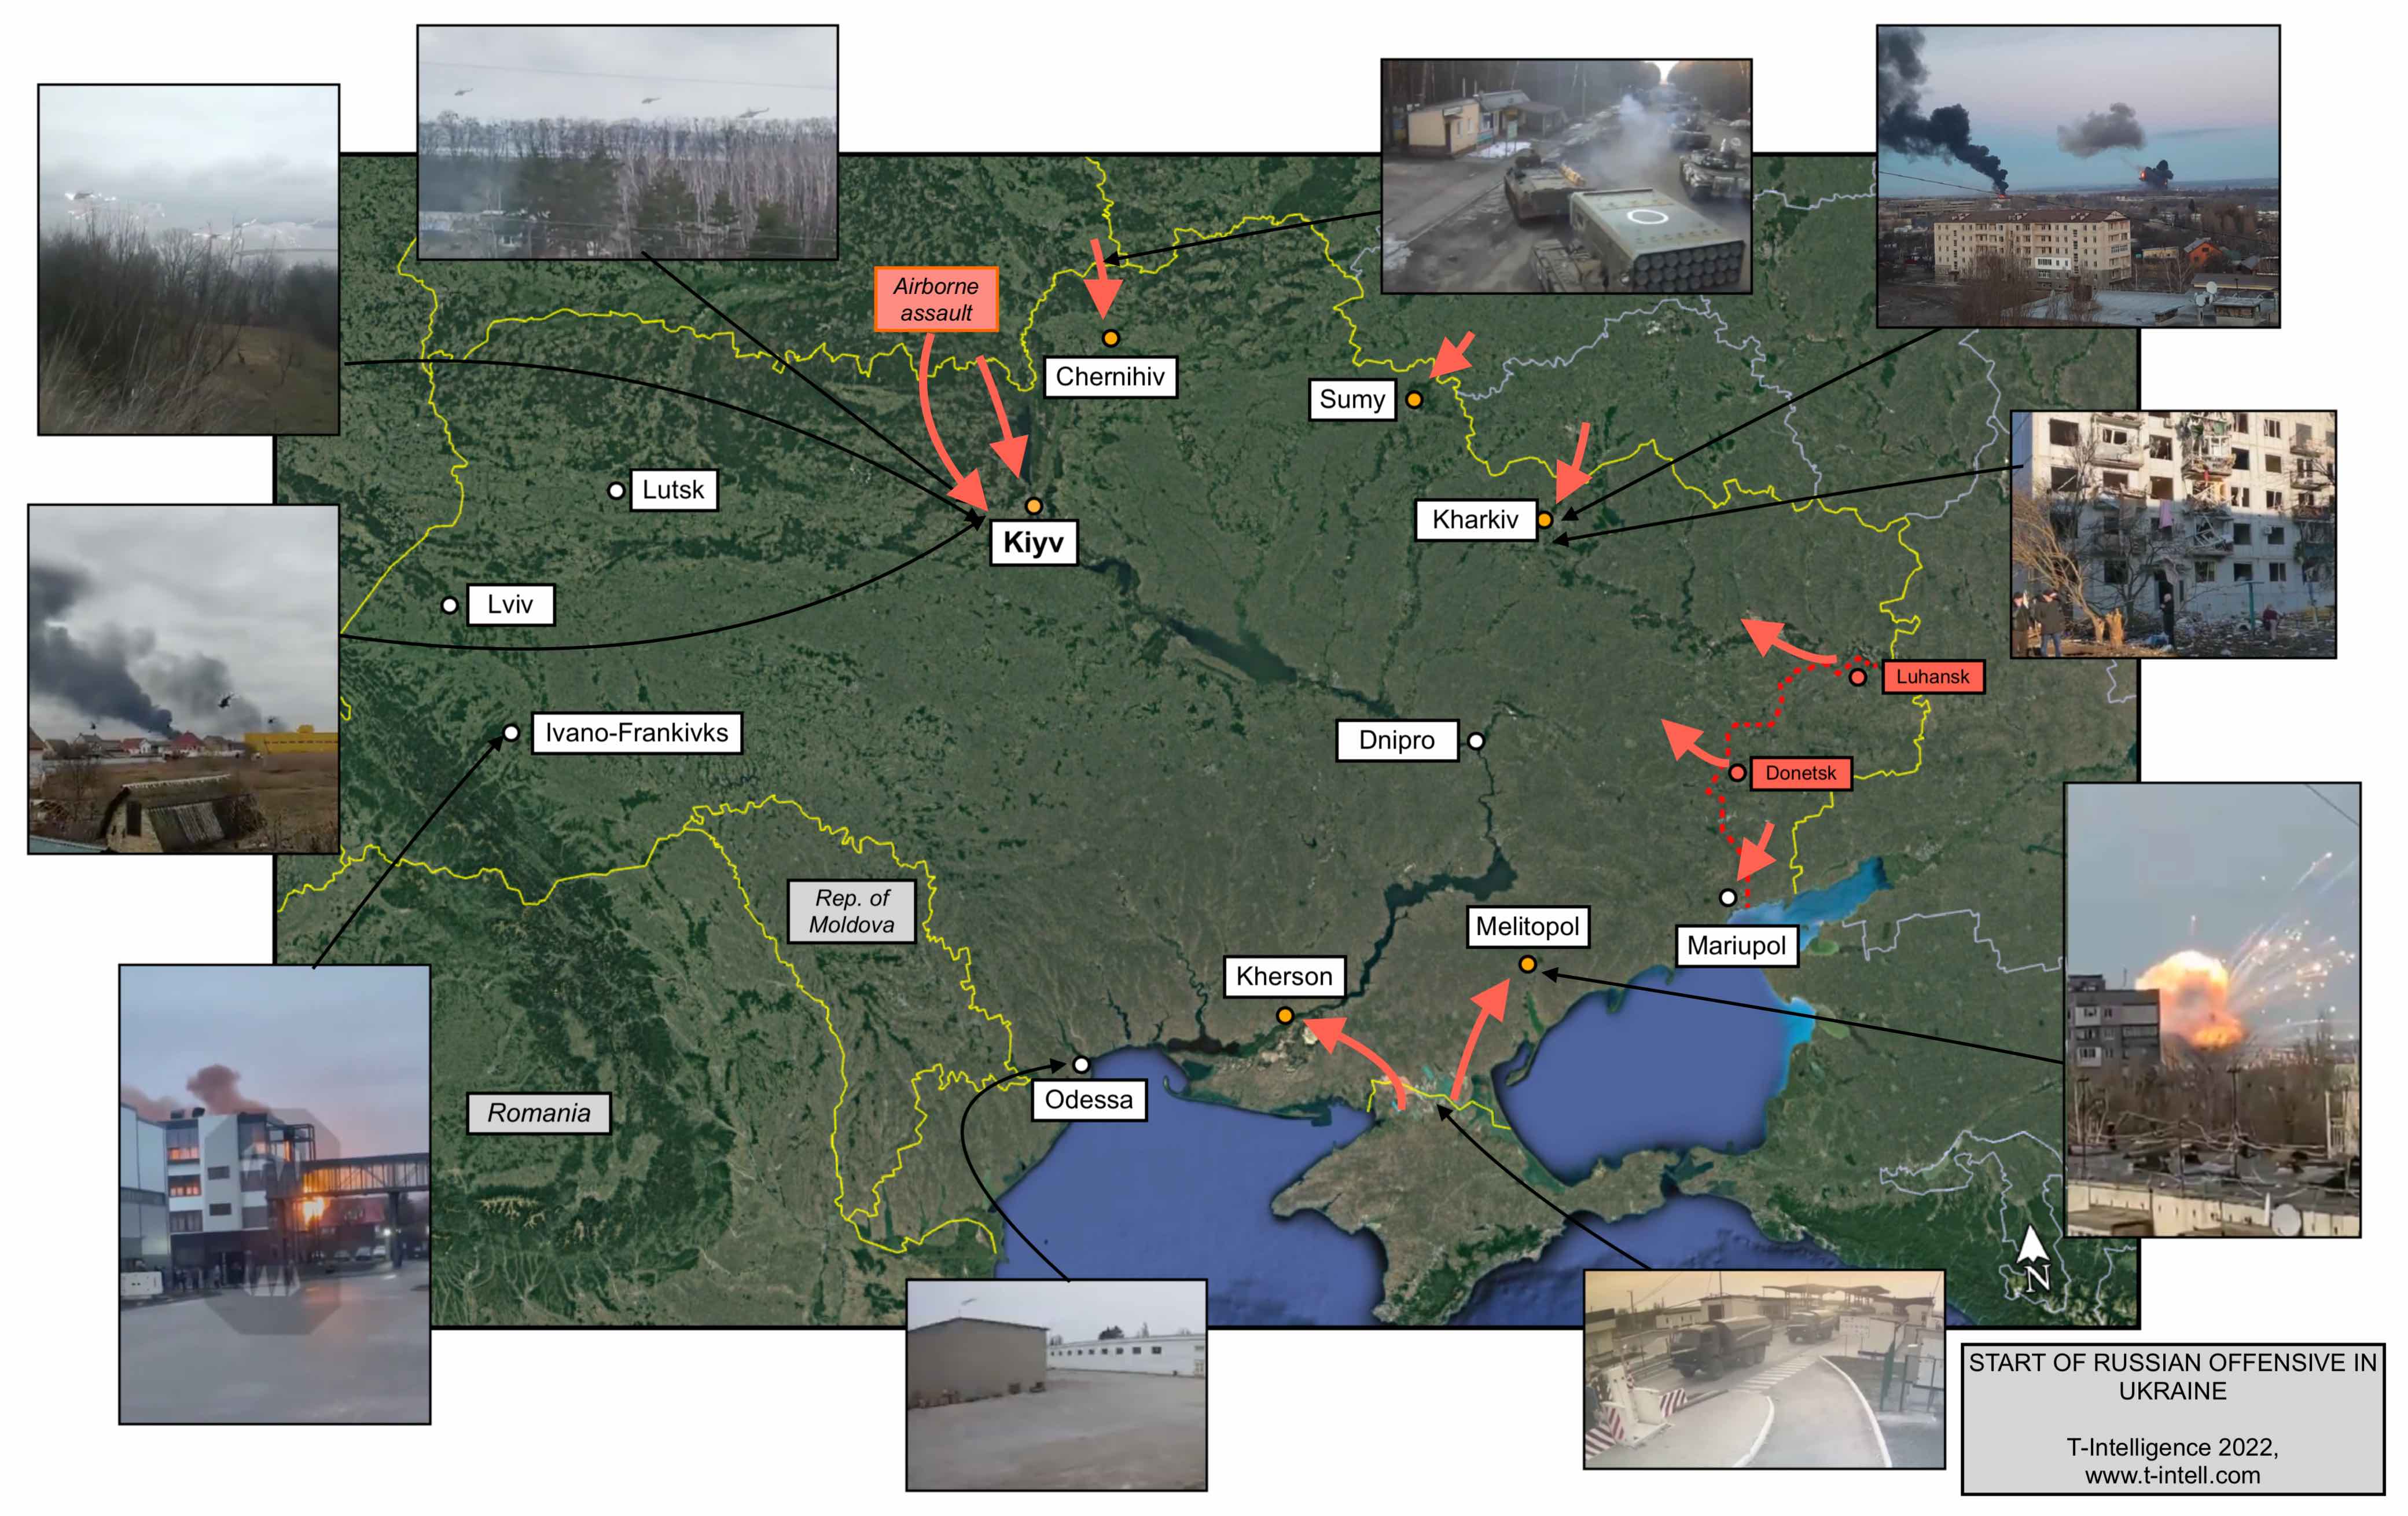 Russia Invades Ukraine: First Day of War Through OSINT